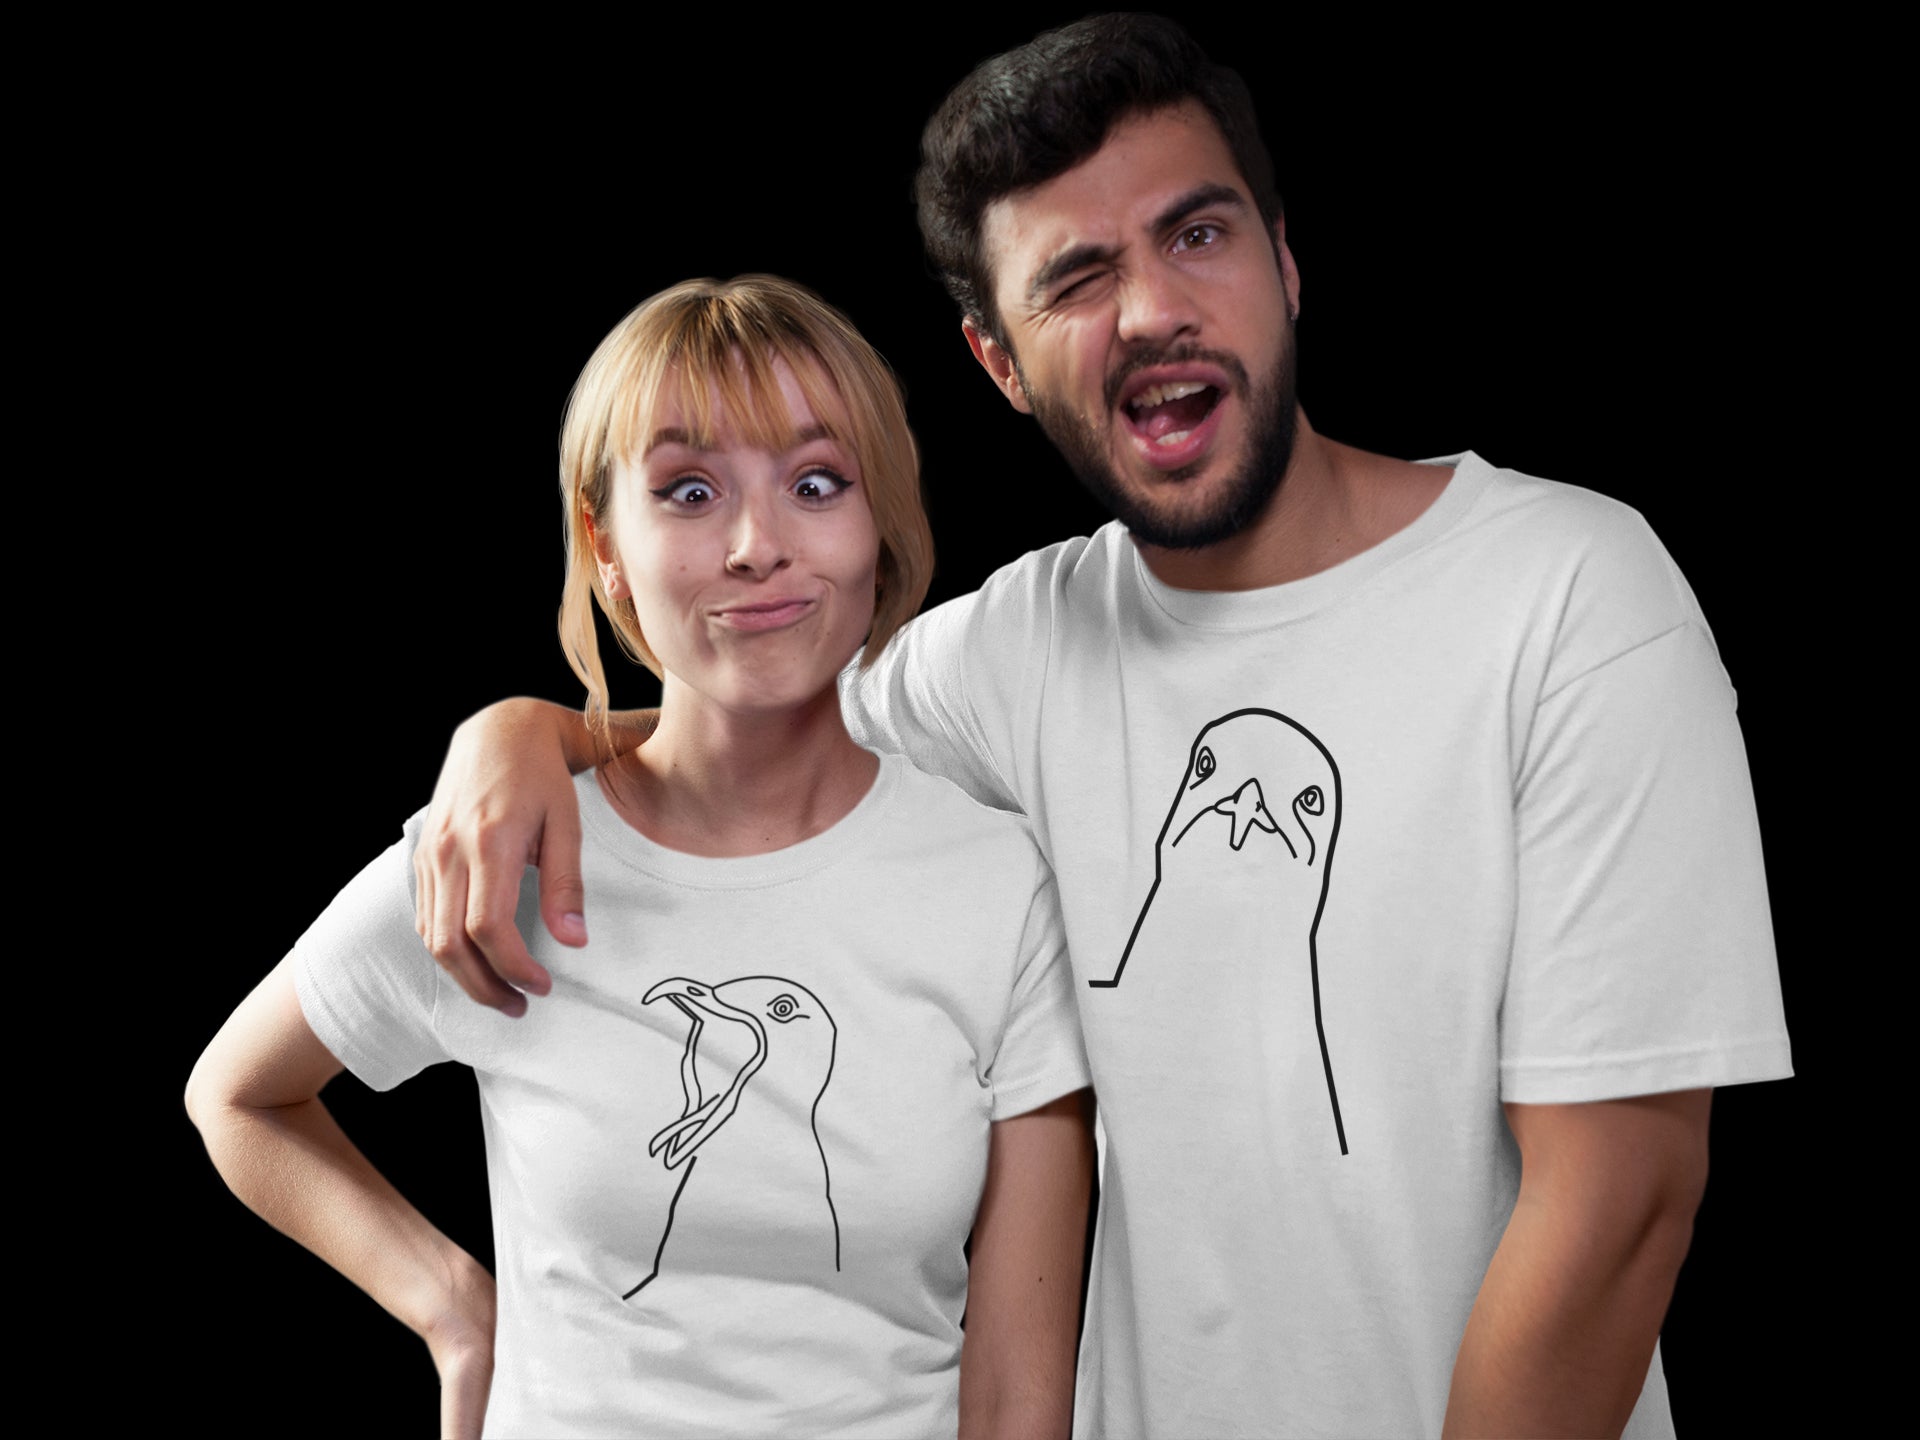 T-shirts - Couples Matching T-shirts, Seagulls